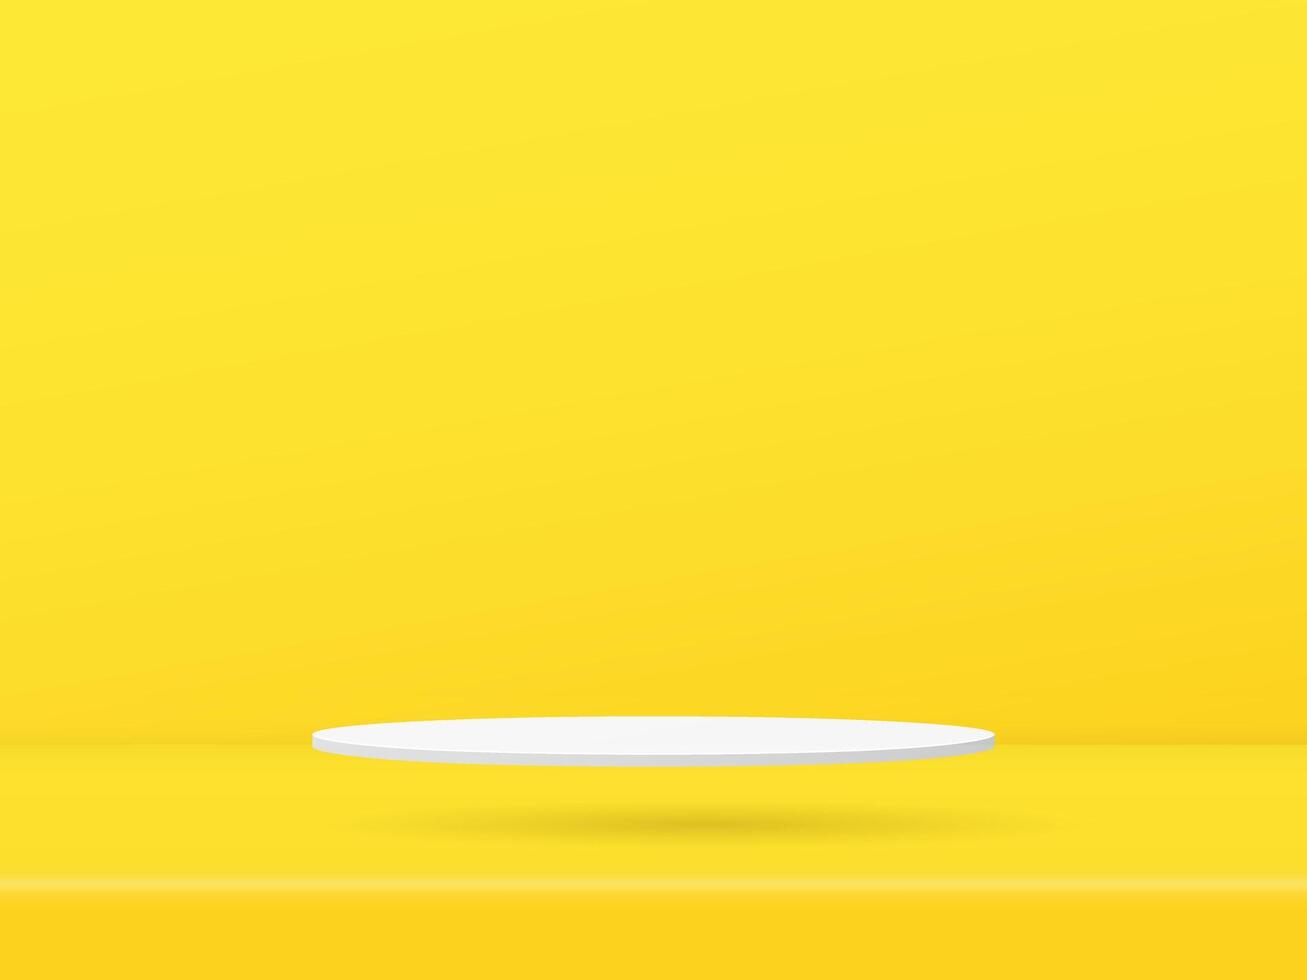 3d vit podium monter är flytande på de golv färgad gul bakgrund design. vektor papper konst illustration